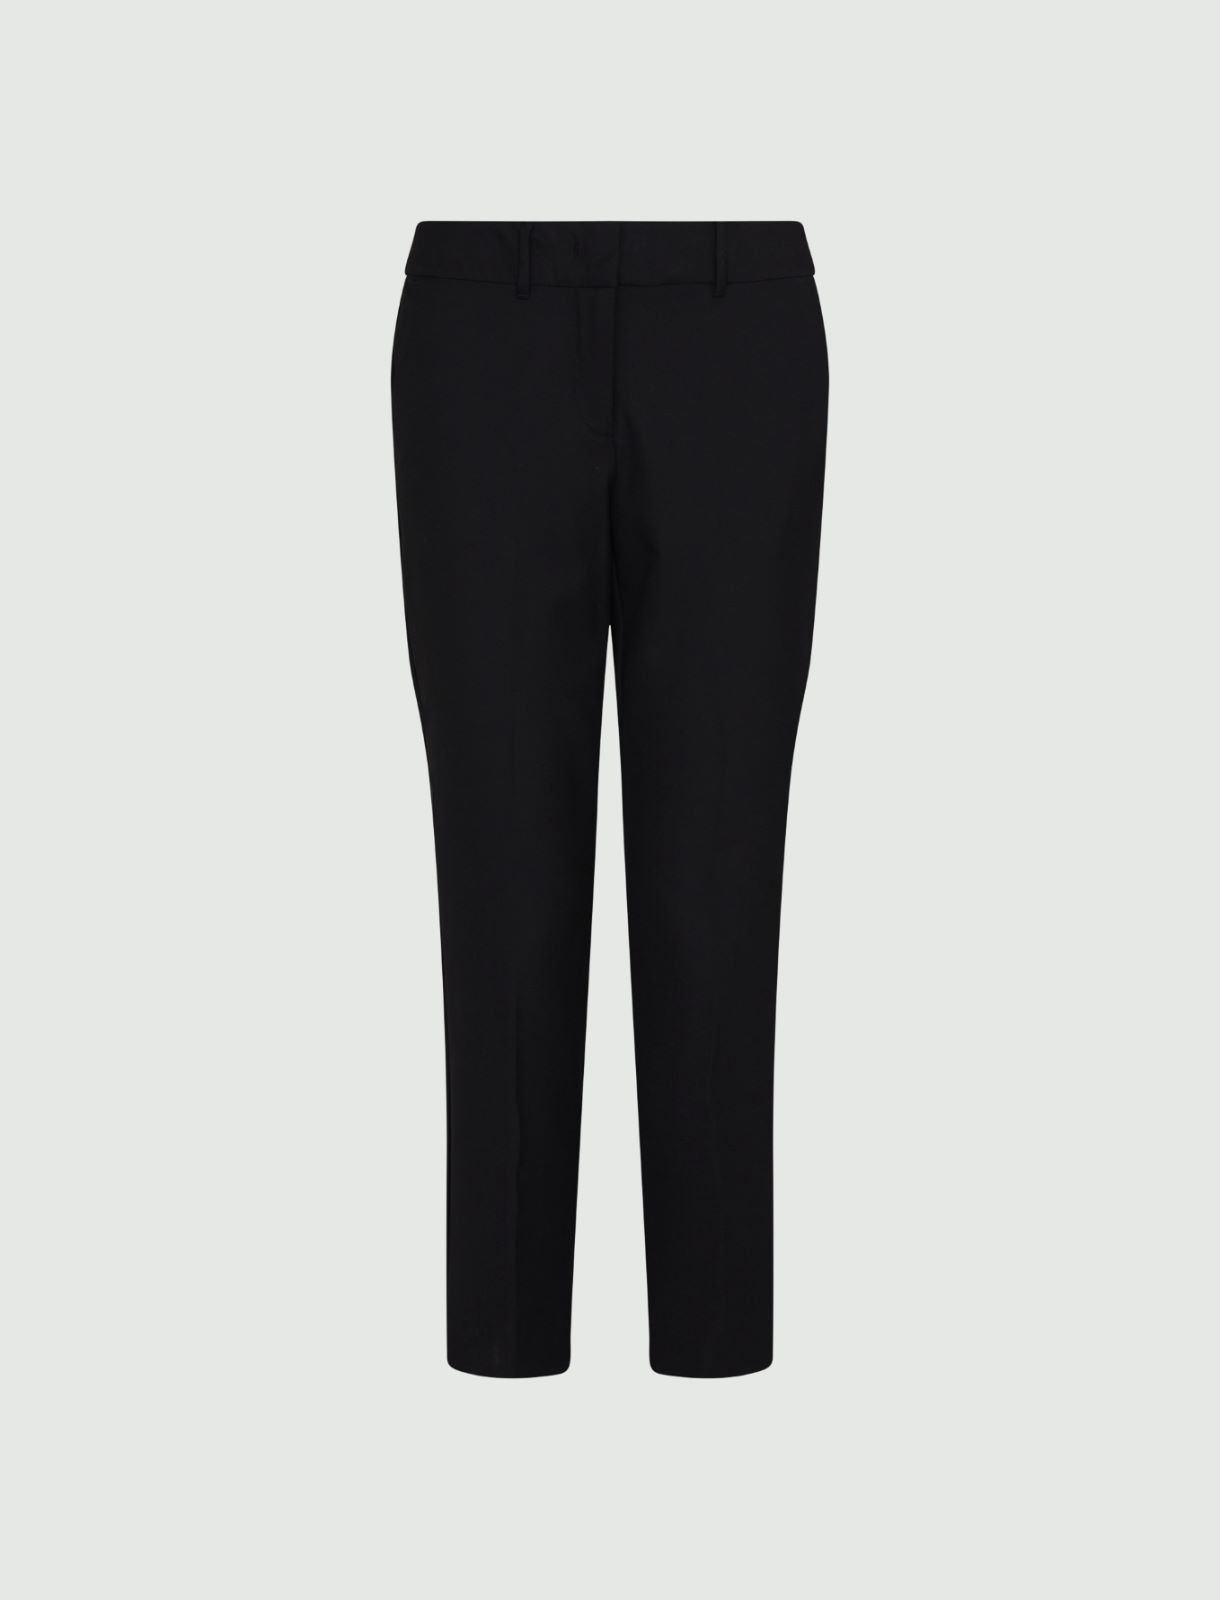 Canvas trousers - Black - Marella - 2